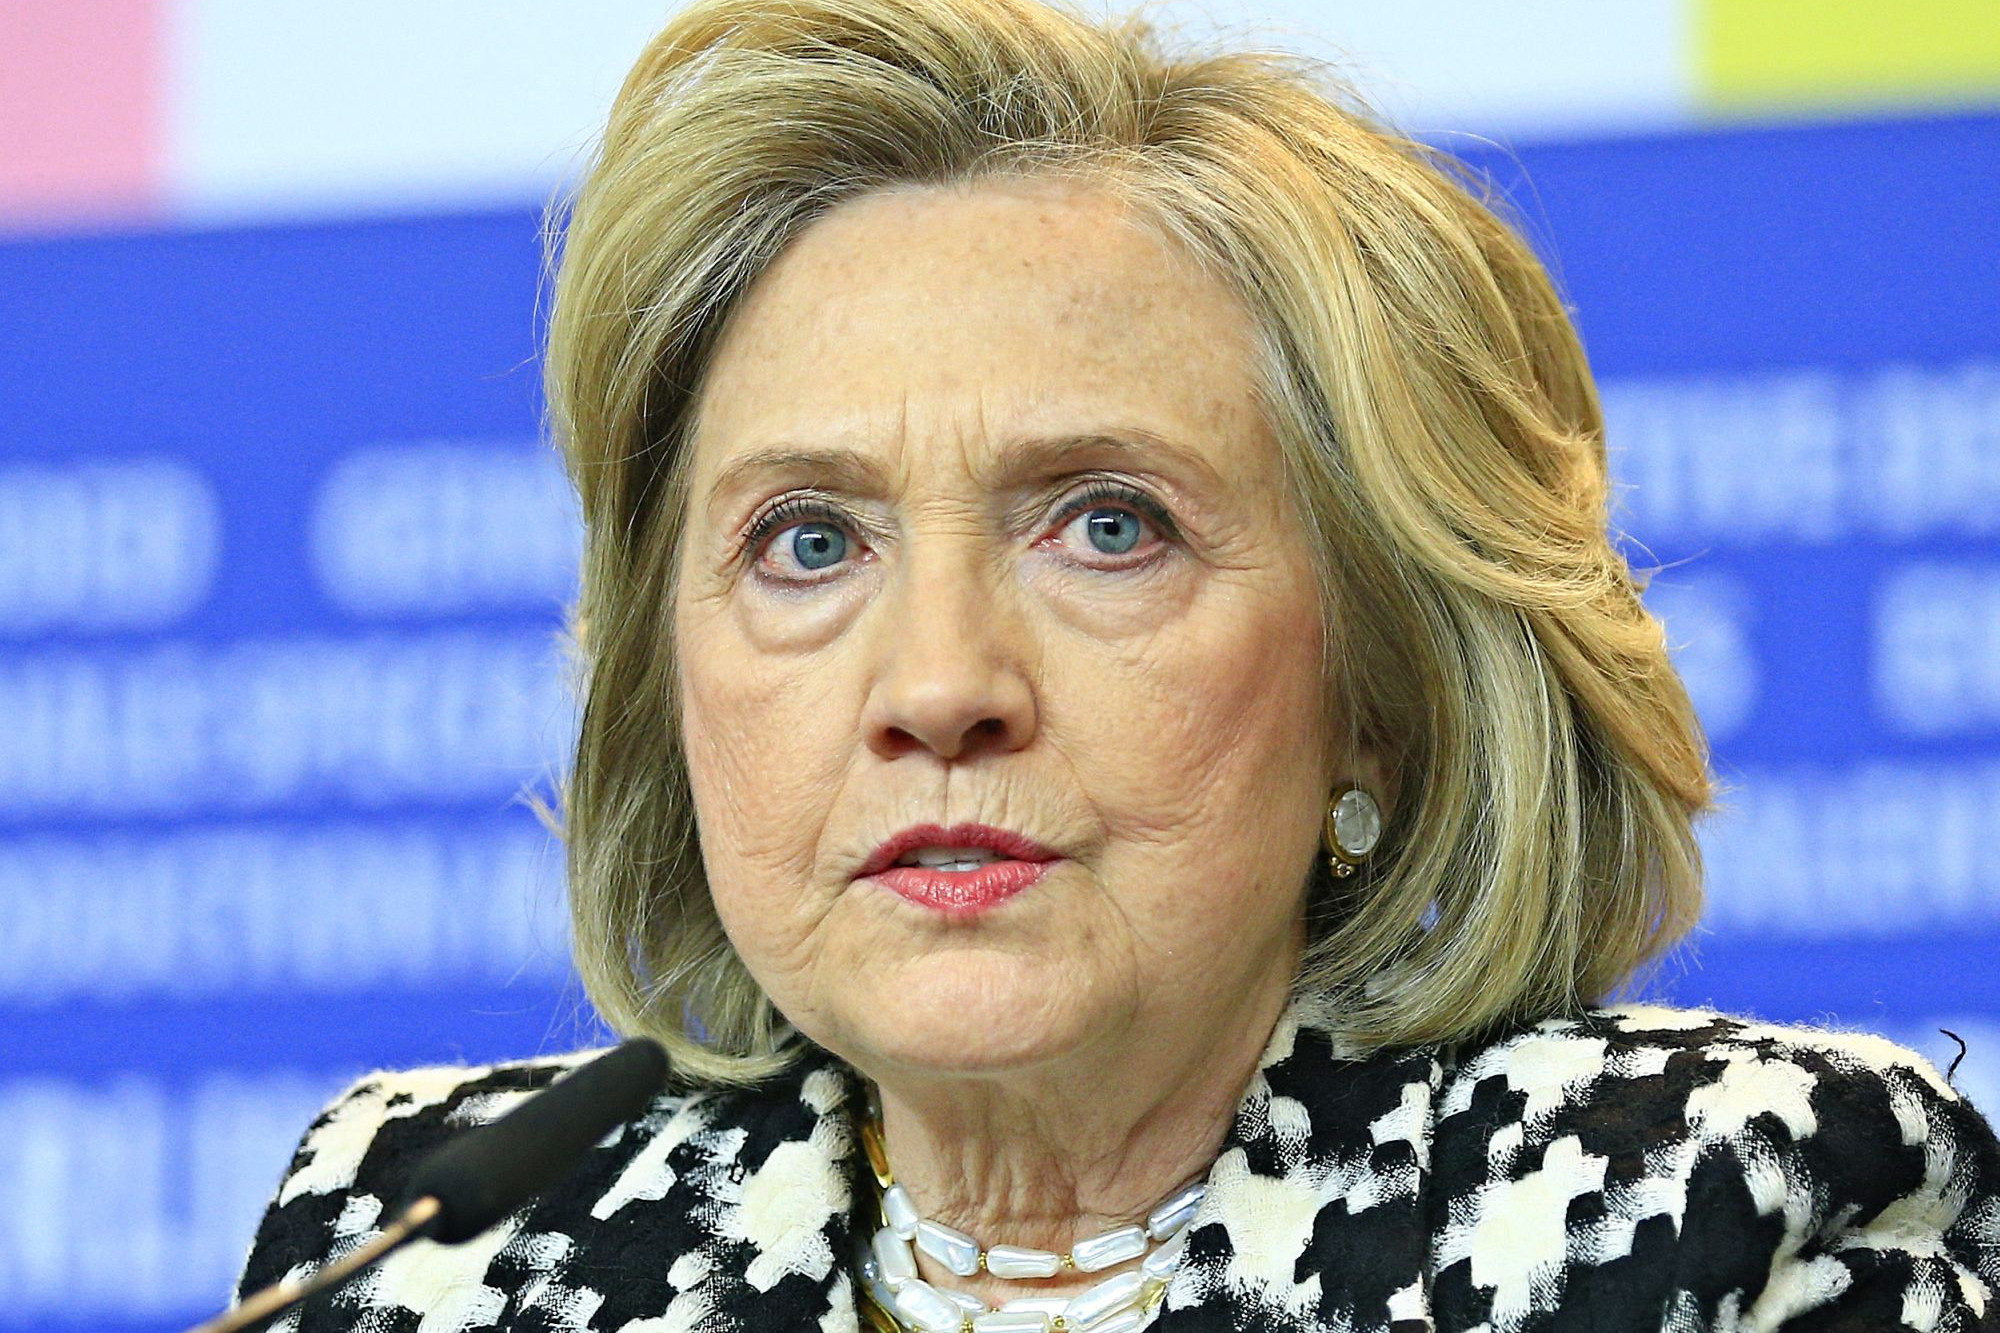 Hillary Clintont keményen kérdőre vonták – jól fel is idegesítette magát + VIDEÓ